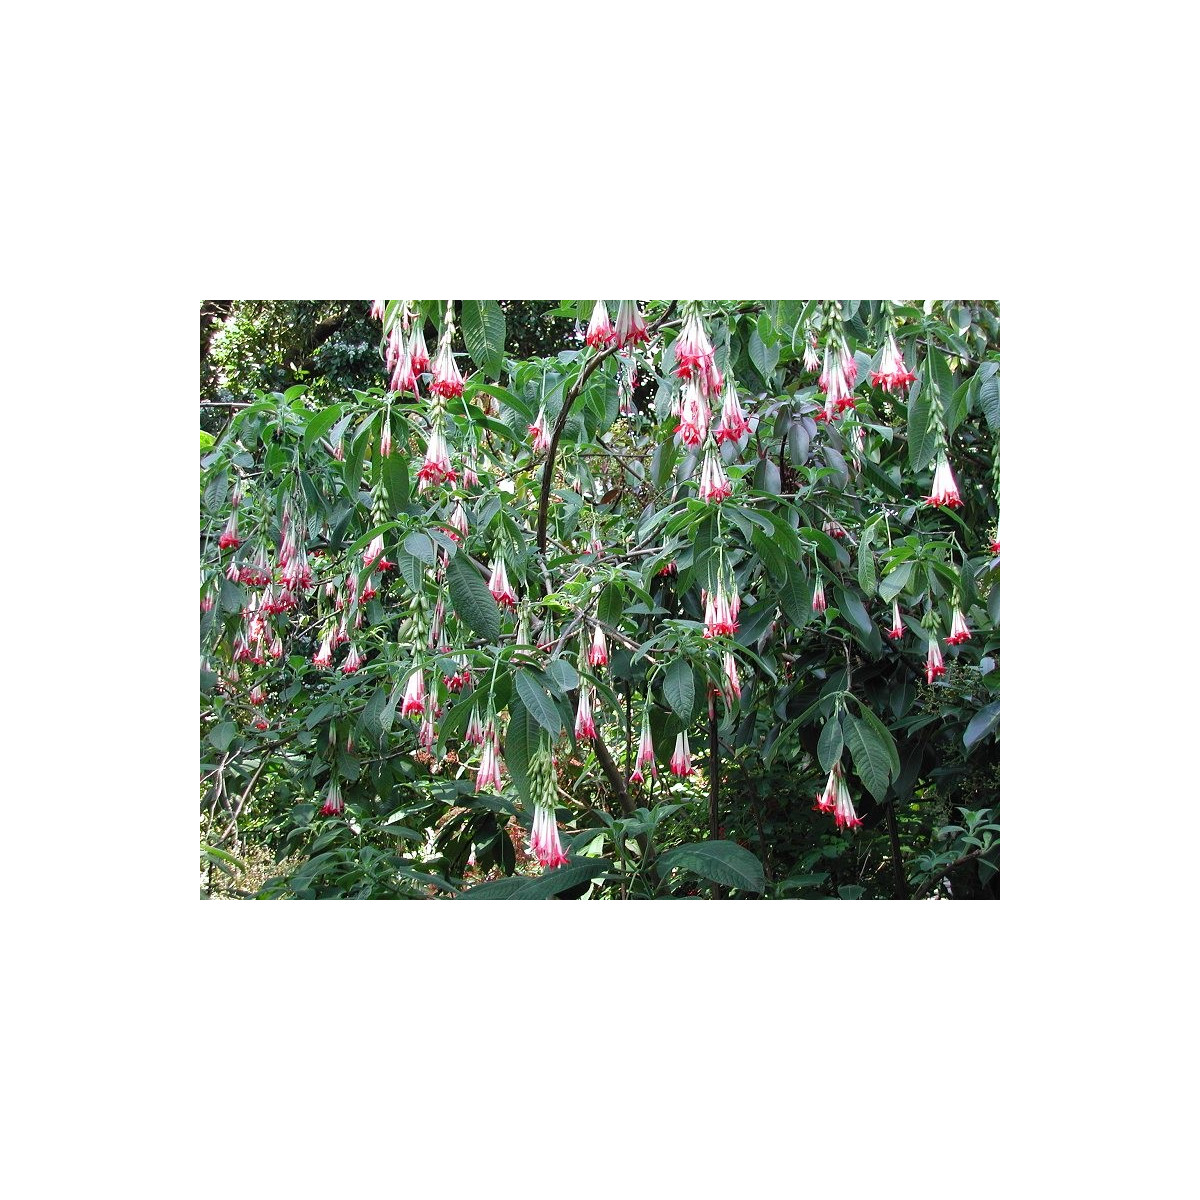 Fuchsie bolívijská bílá - Fuchsia boliviana - semena fuchsie - 10 ks